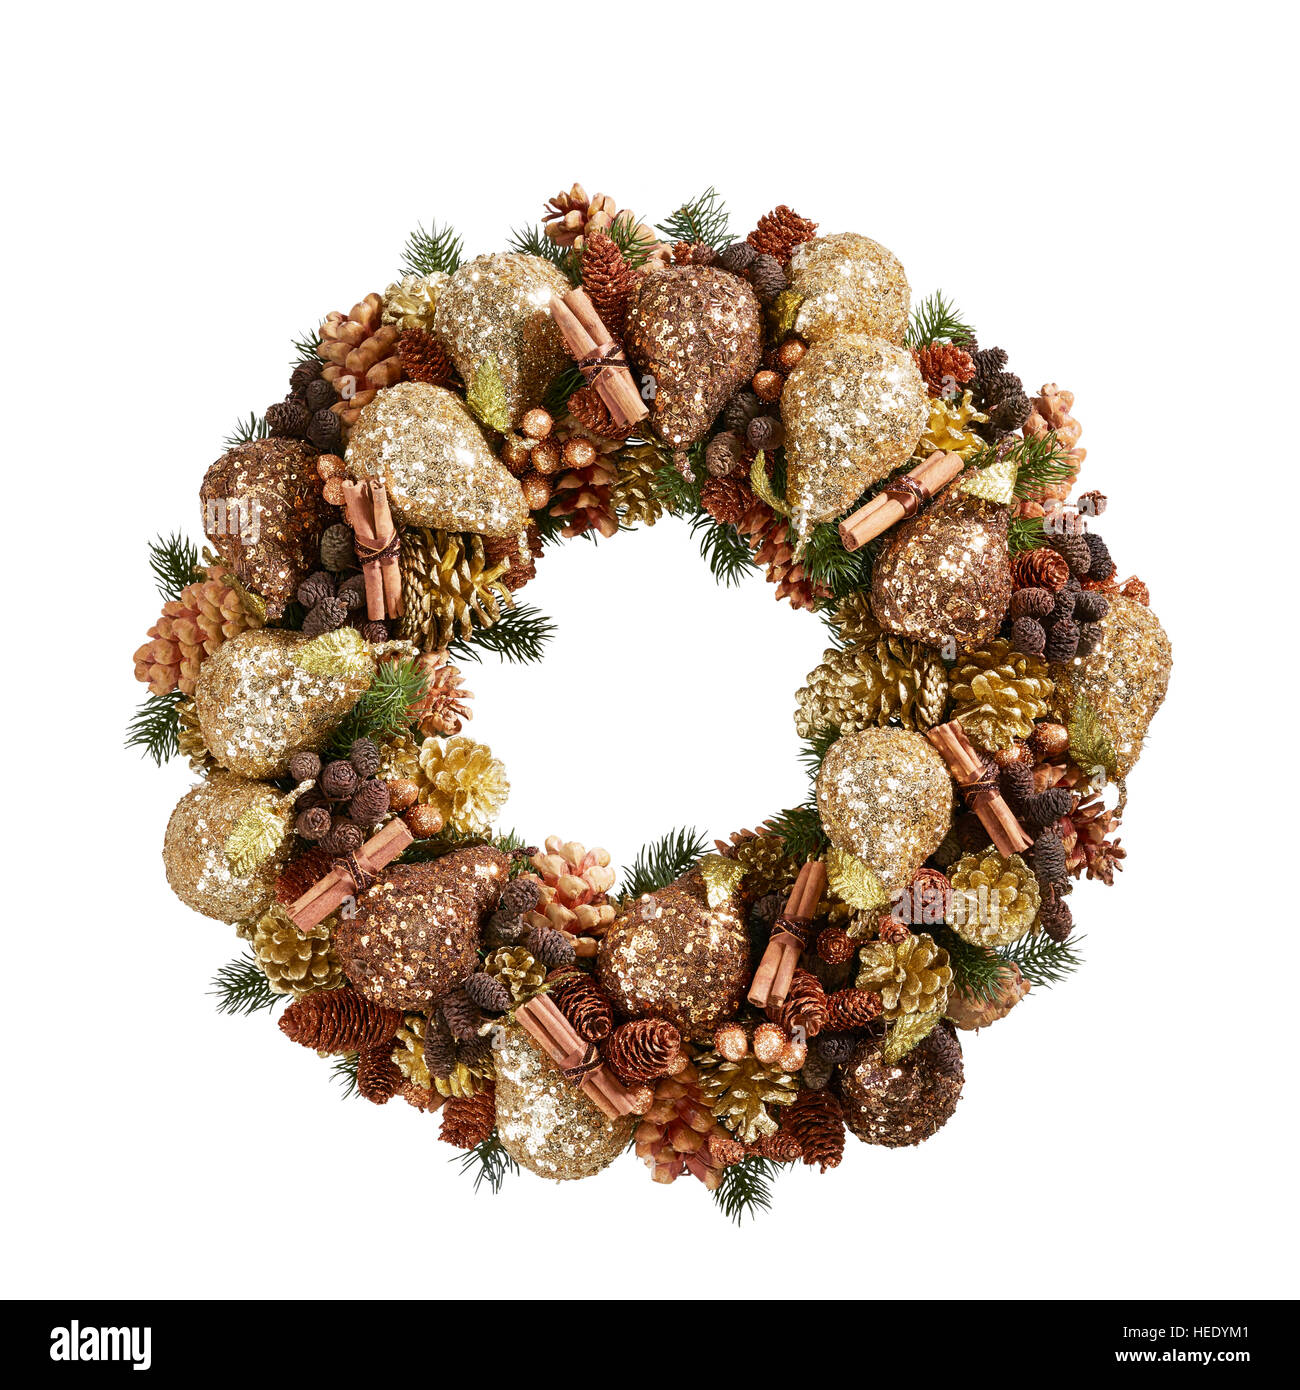 Weihnachtsschmuck mit Kranzgesimse, festliche Tür, stilvoll, traditionell rund rund rund, traditionell festlich Stockfoto